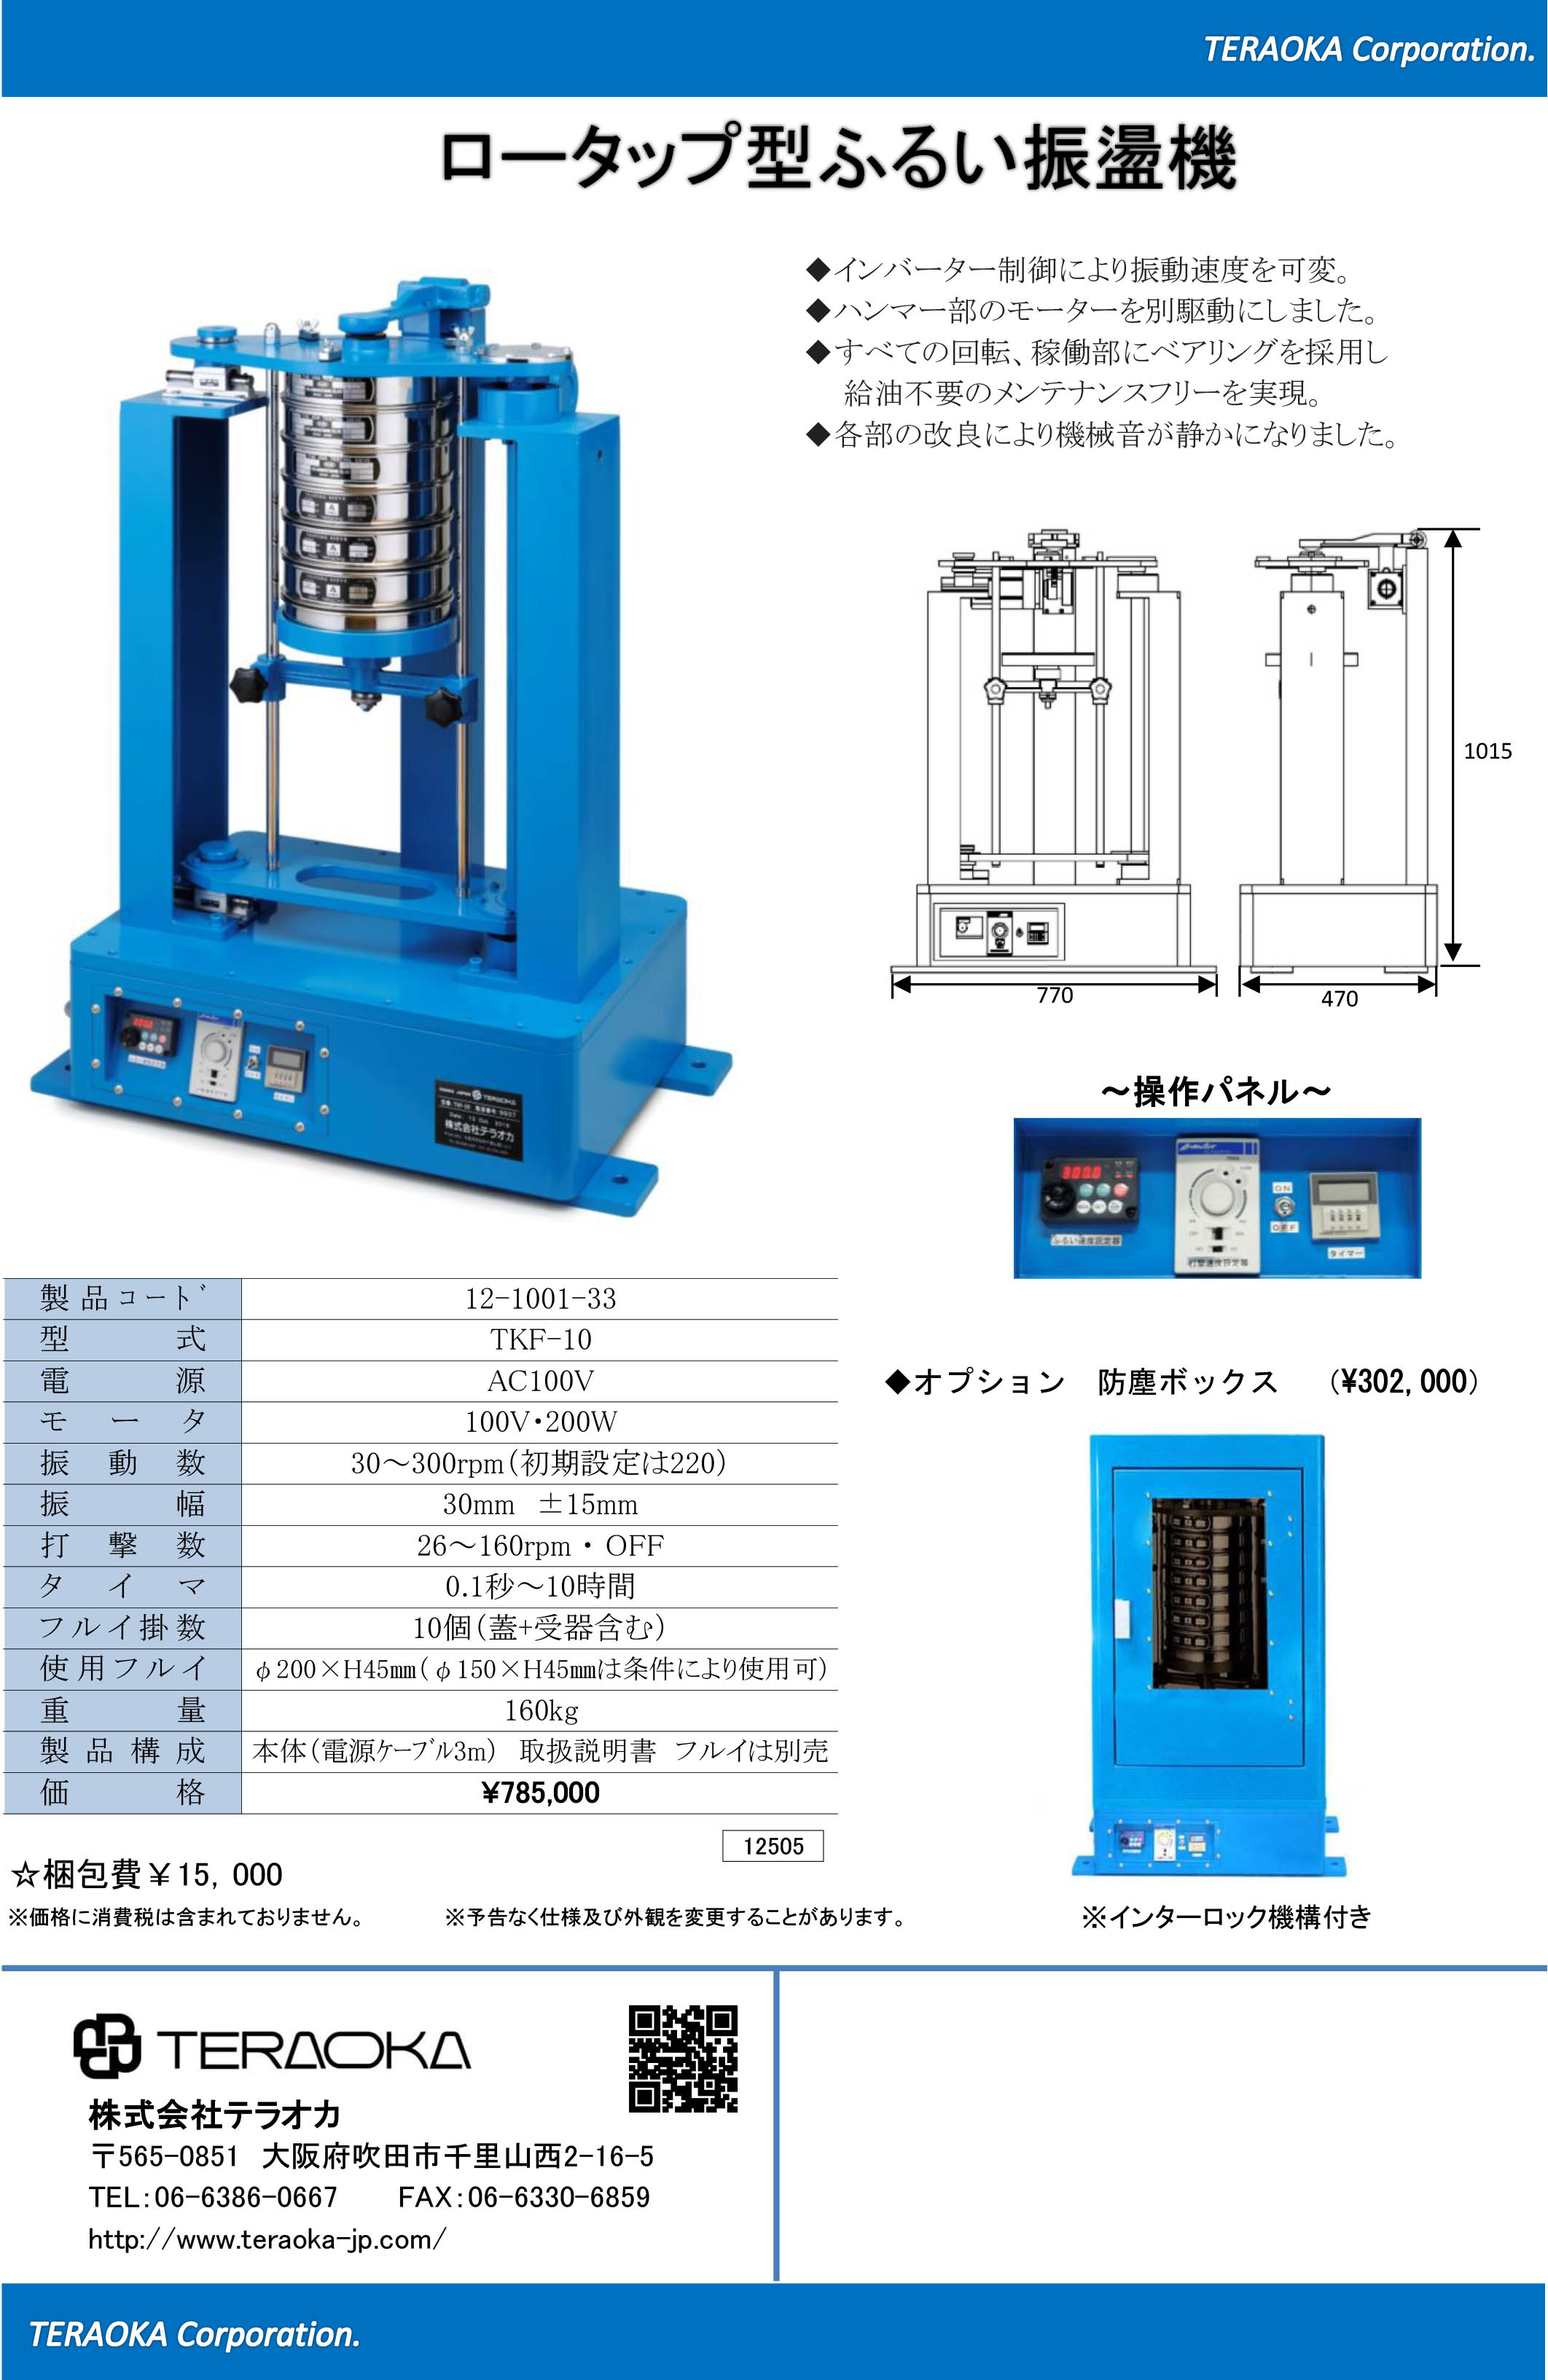 ふるい振盪機（ロータップ型）TKF-10 製品カタログ テラオカ | イプロス製造業